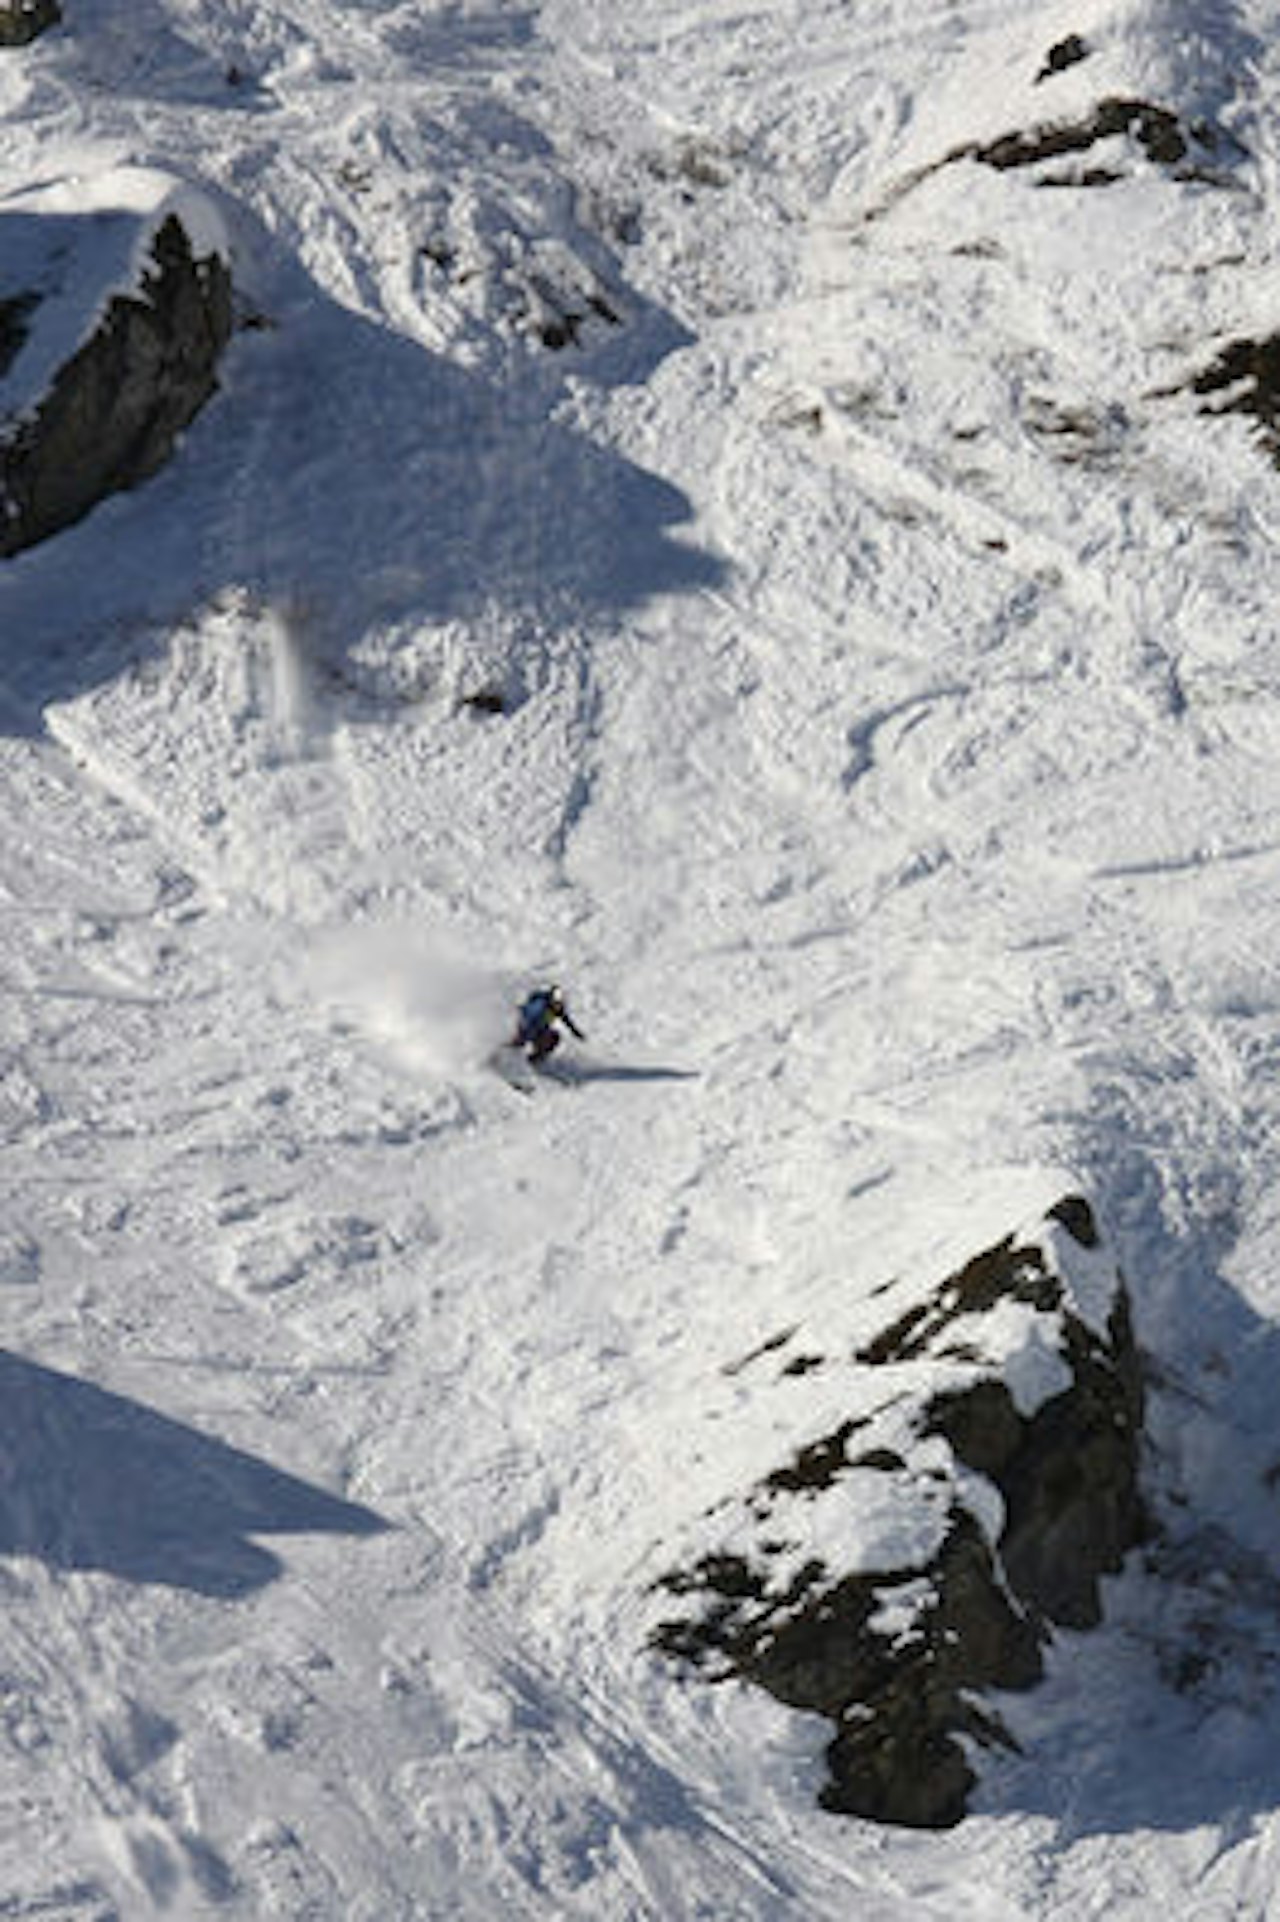 ENESTE NORSKE: Anne May Slinning er alene om å være norsk i klassen Damer alpint.